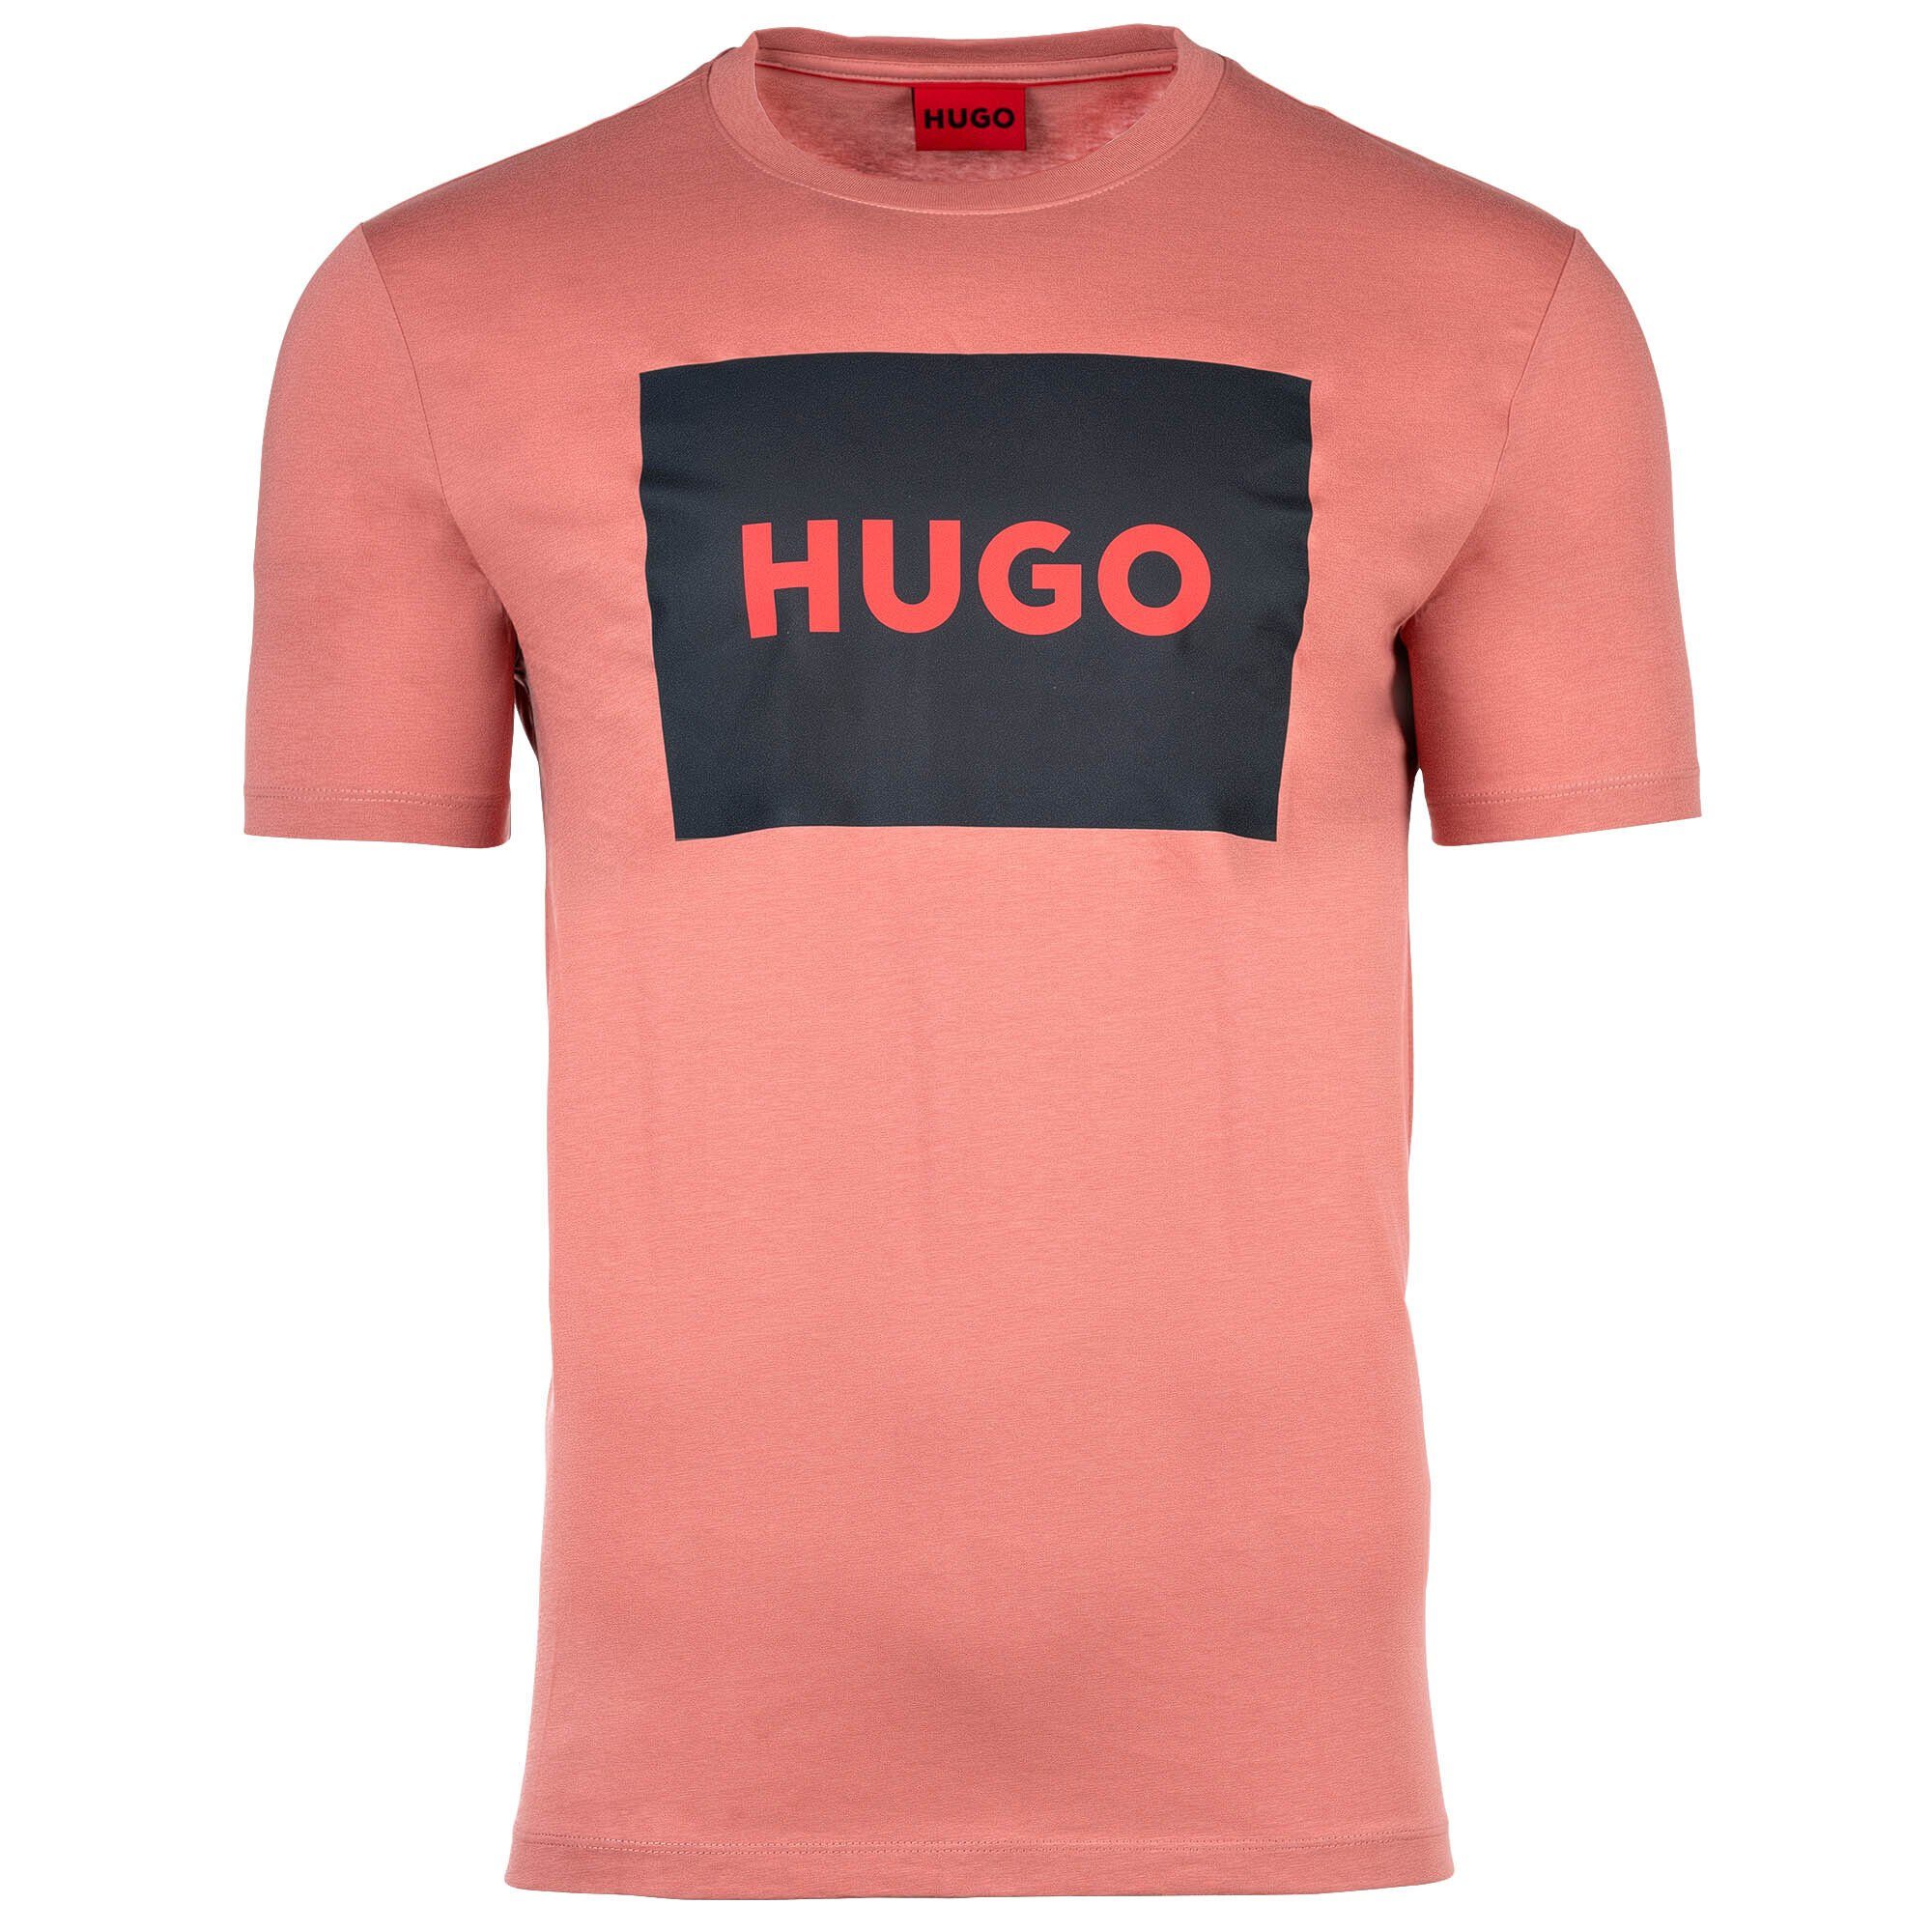 HUGO T-Shirt Herren T-Shirt Dulive222, Rundhals, Pink - Kurzarm